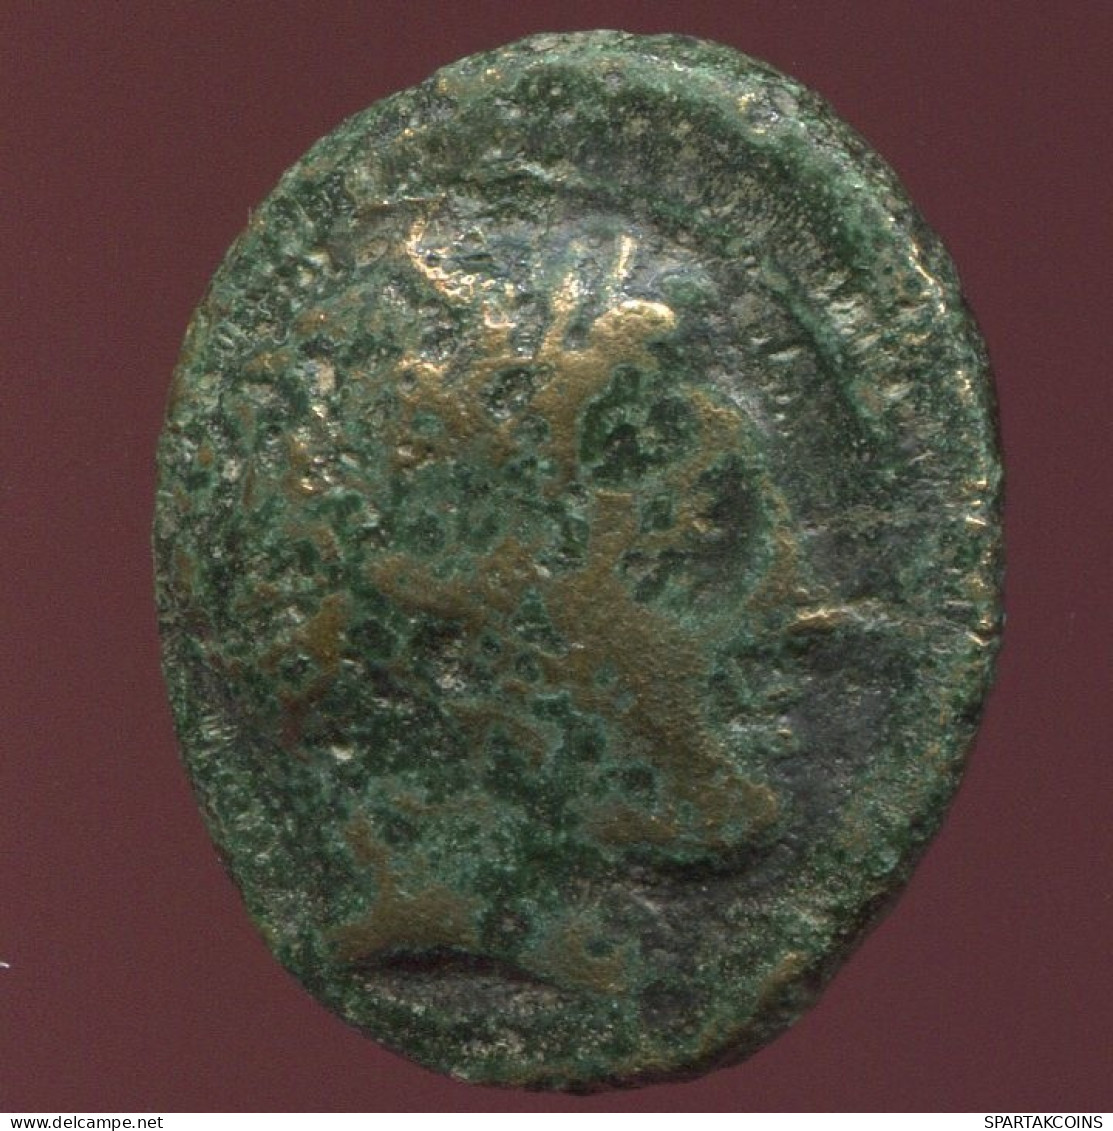 Antiguo Auténtico Original GRIEGO Moneda 6.4g/21.80mm #ANT1109.12.E.A - Greek